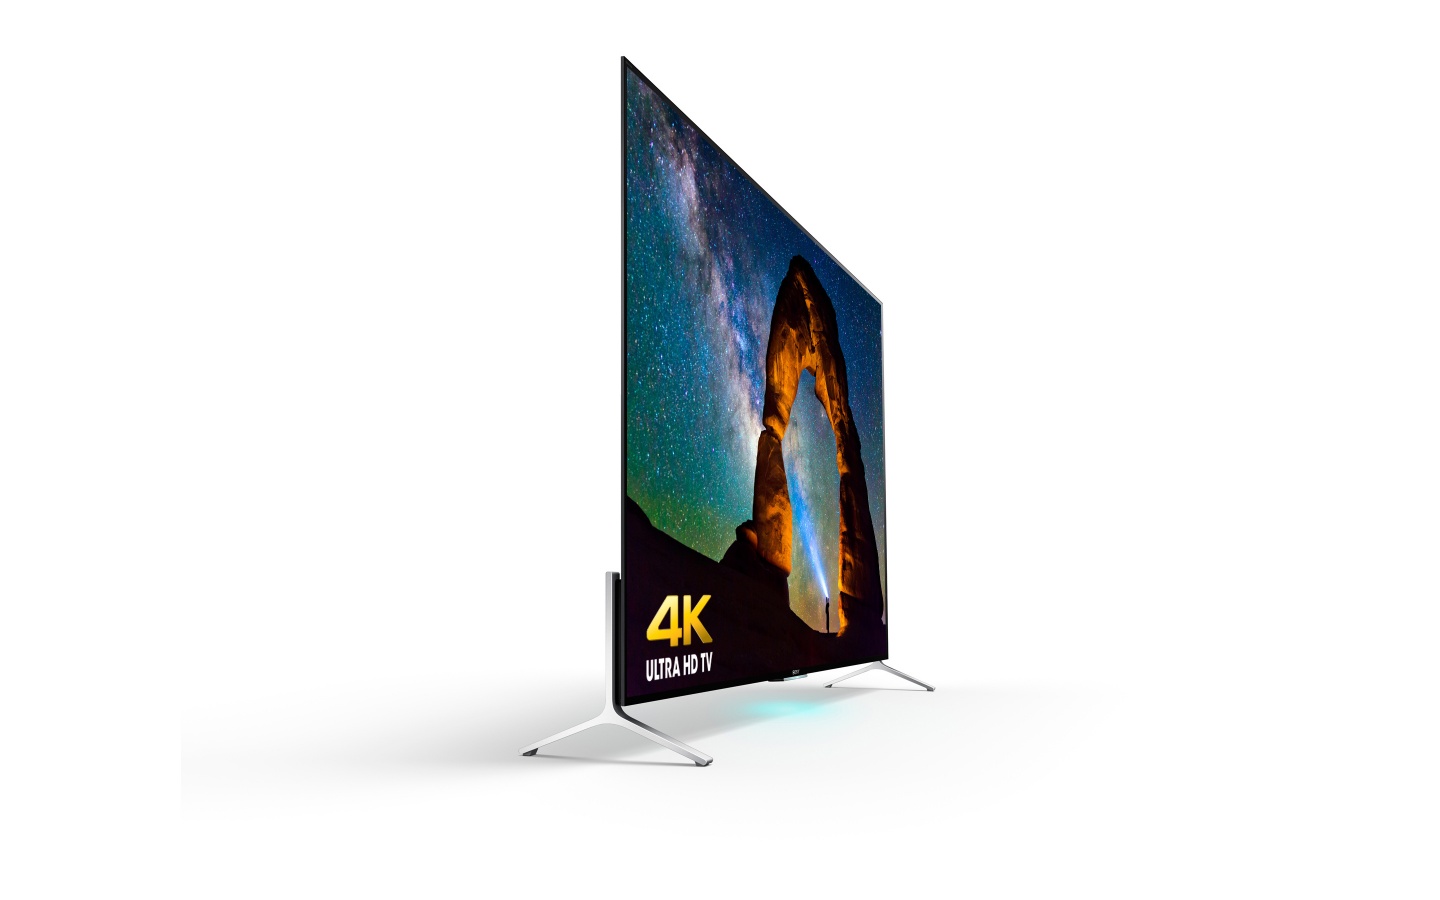 Sony 4k Ultra HD Smart TV Wallpaper 1440x900